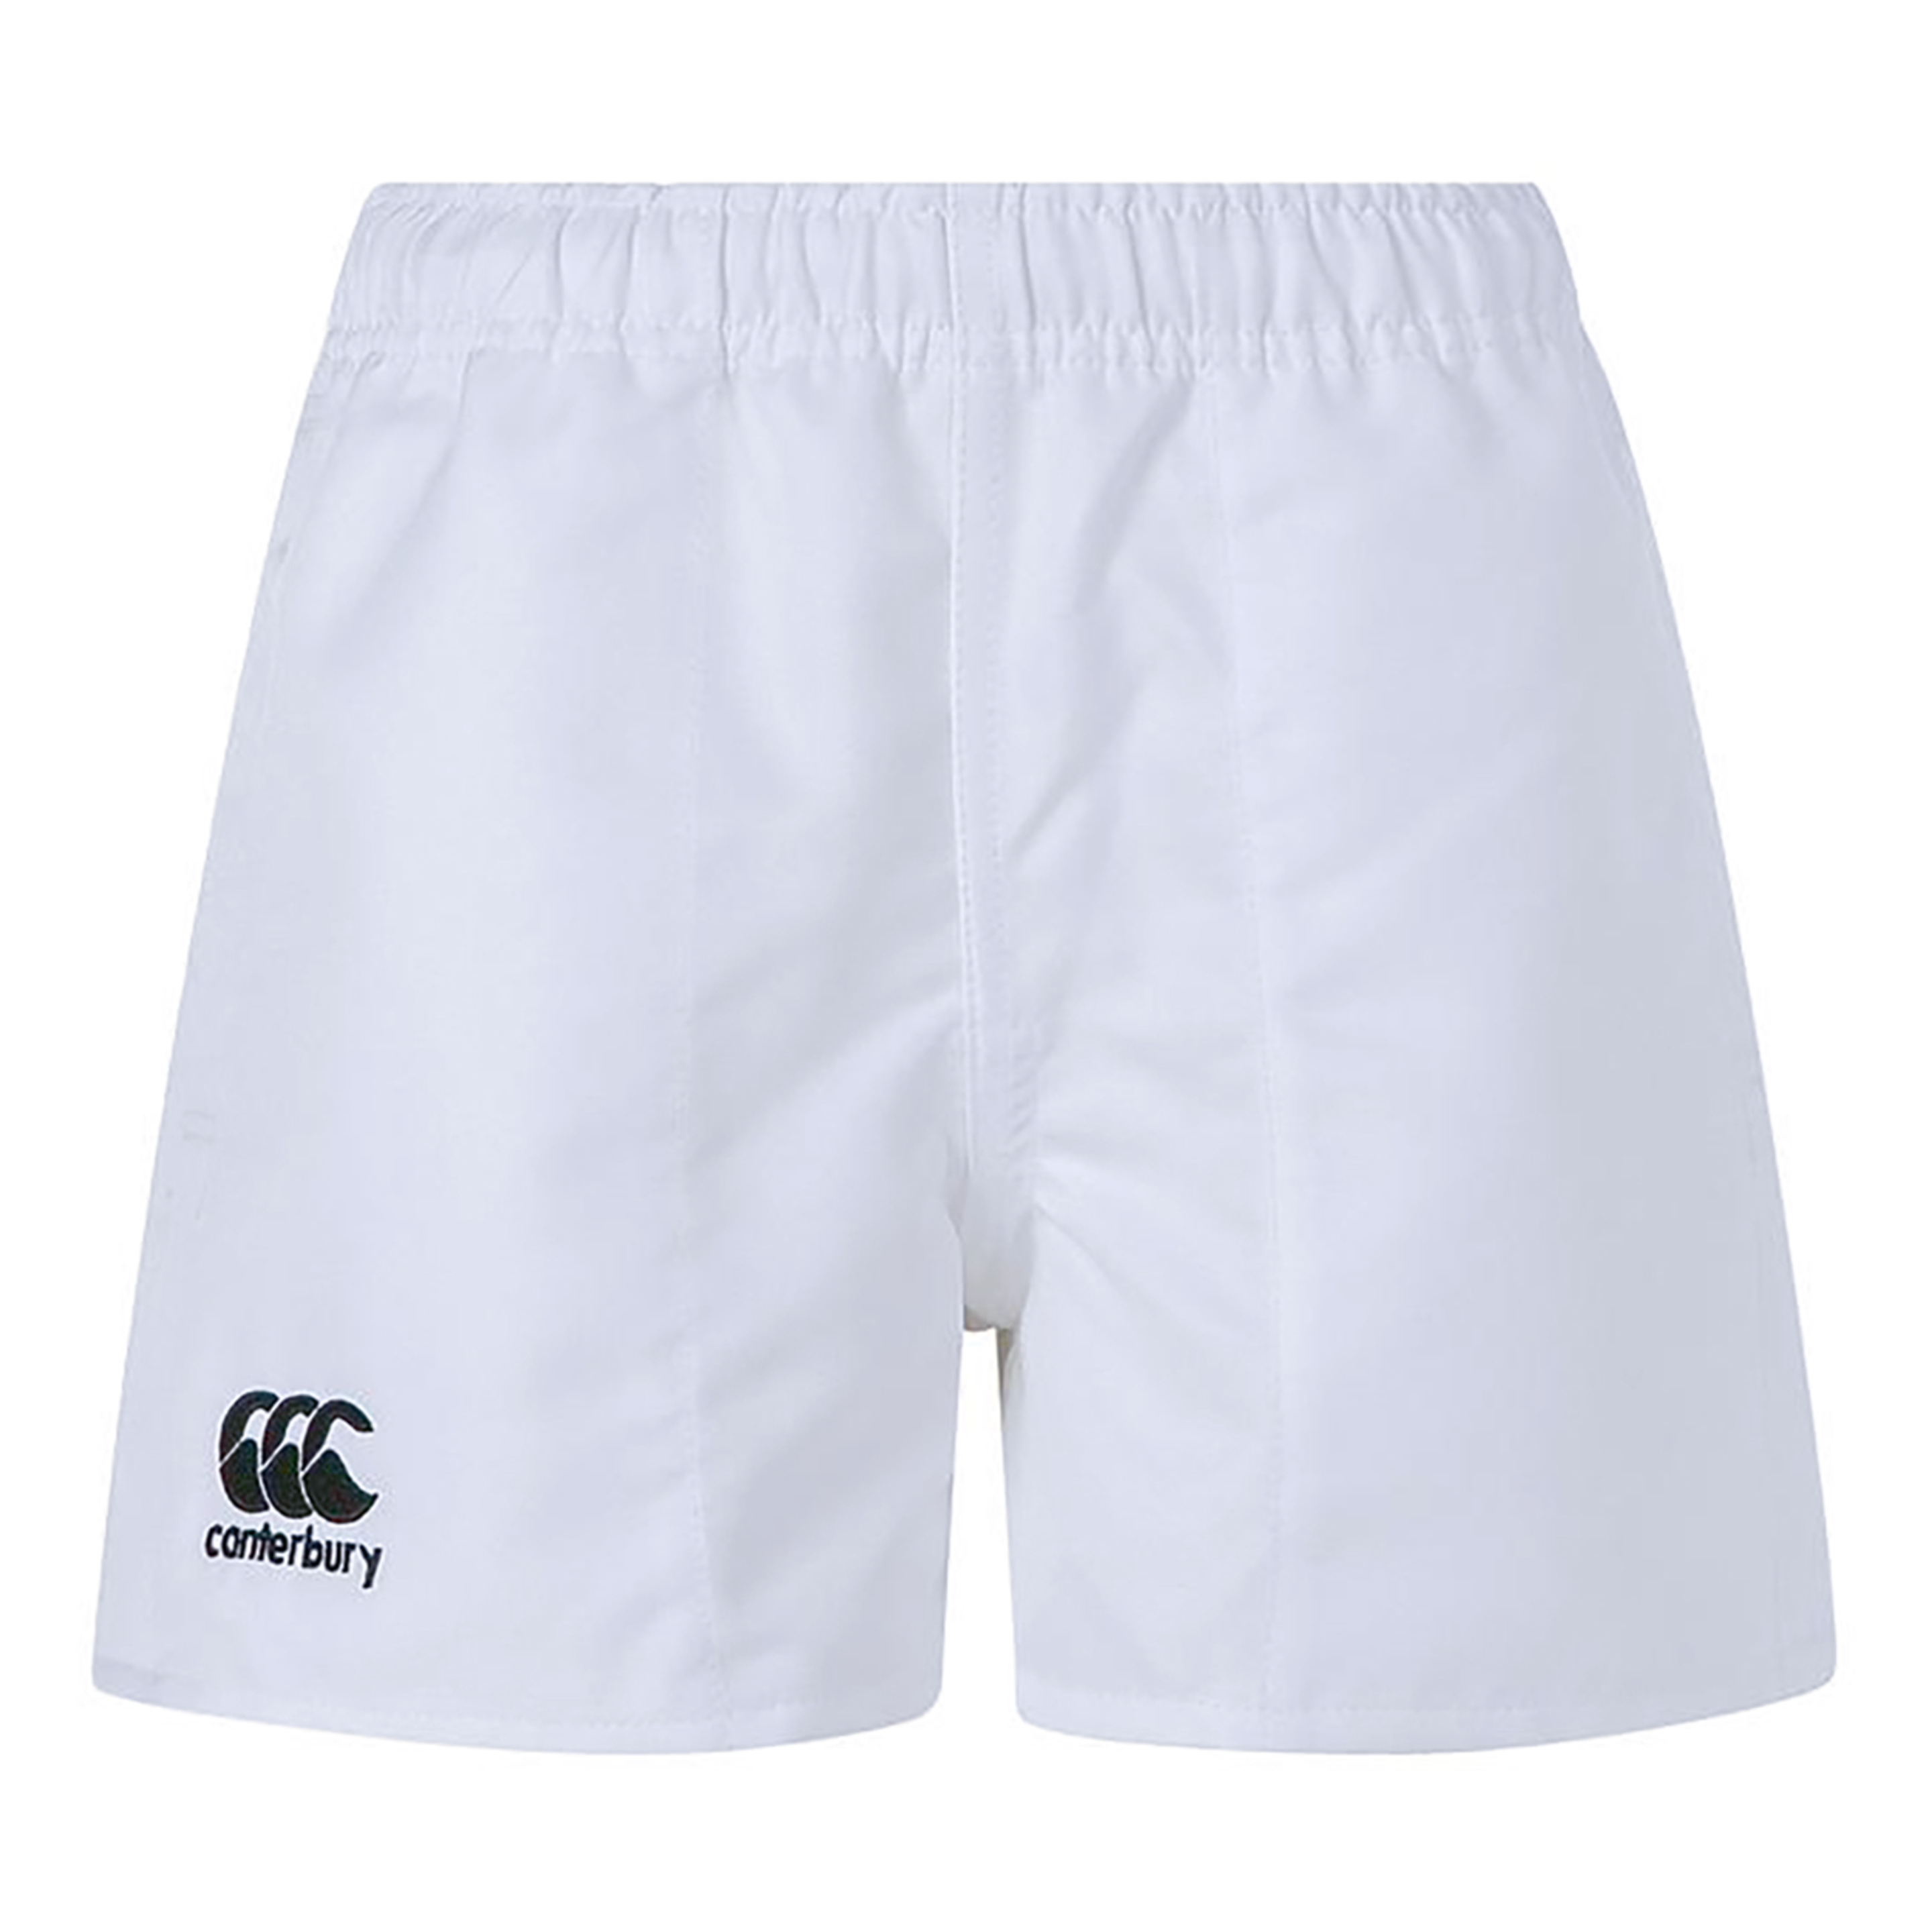 Shorts Estilo Rugby Canterbury - blanco - 